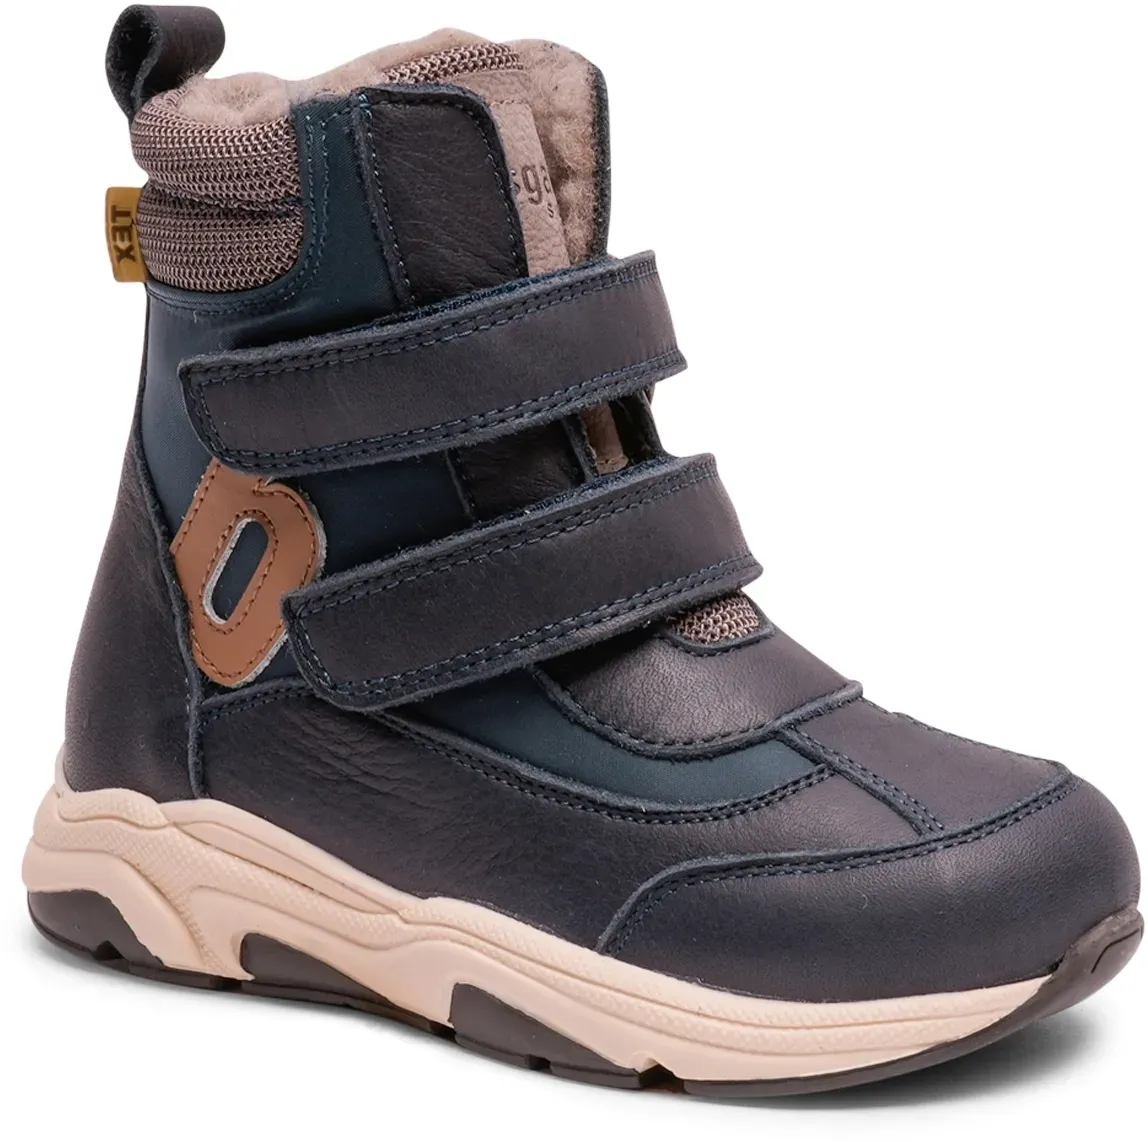 Winterstiefel BISGAARD "bisgaard marius tex" Gr. 25, blau (dunkelblau, kombiniert) Kinder Schuhe Stiefel Boots mit kontrastfarbenem Logo